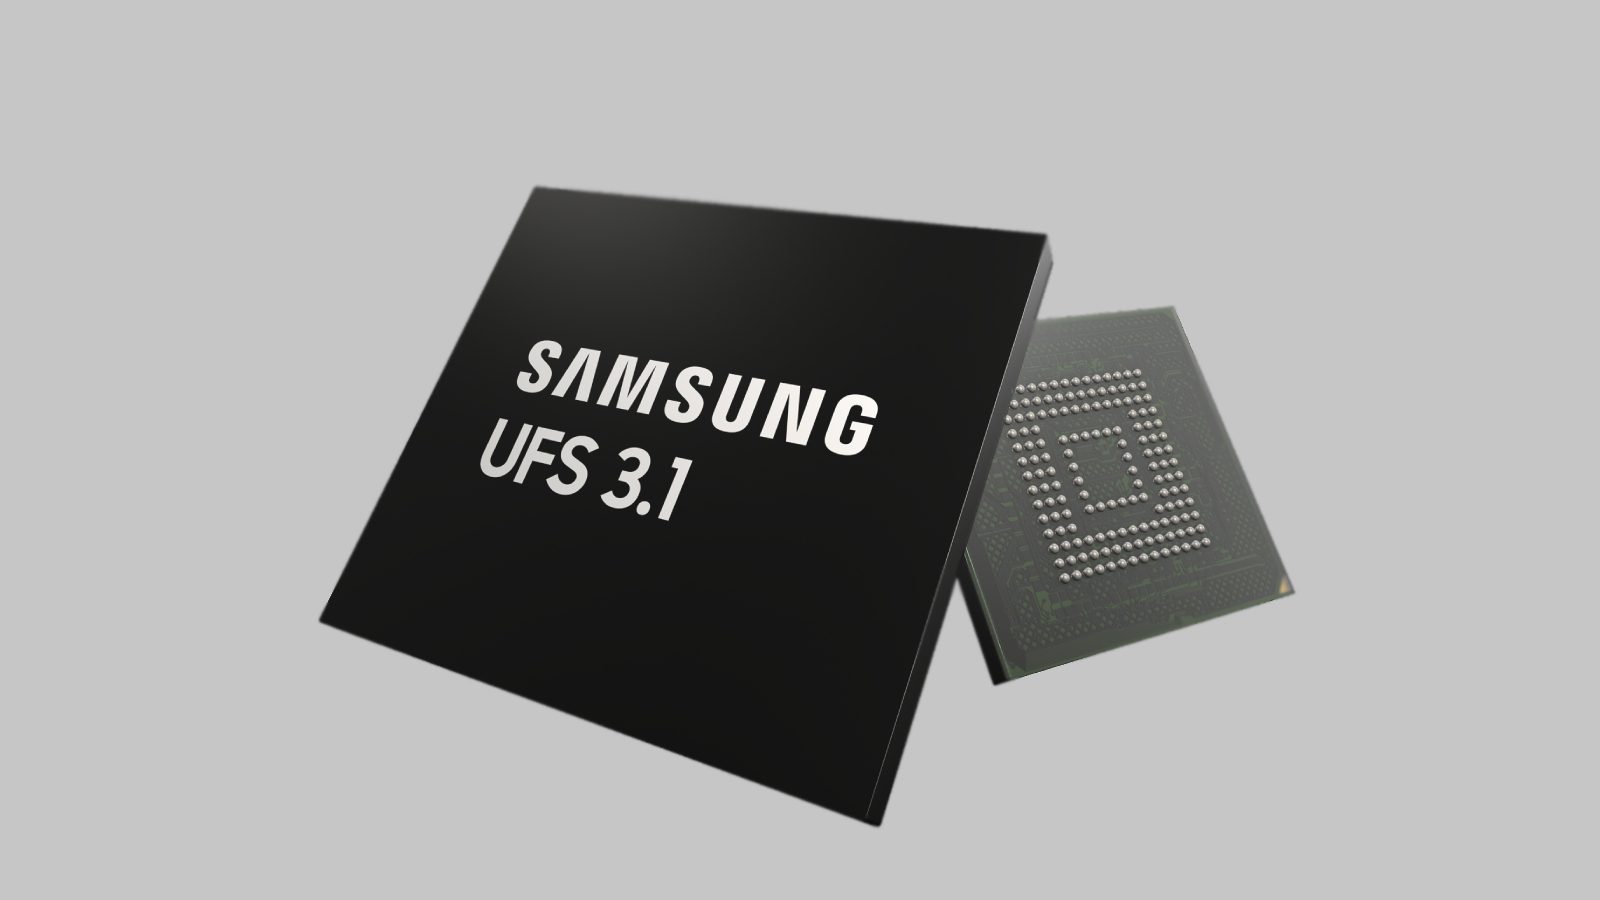 Universal Flash Storage 3.1: новые решения Samsung для автомобильной памяти, предлагающие лучшие моб...